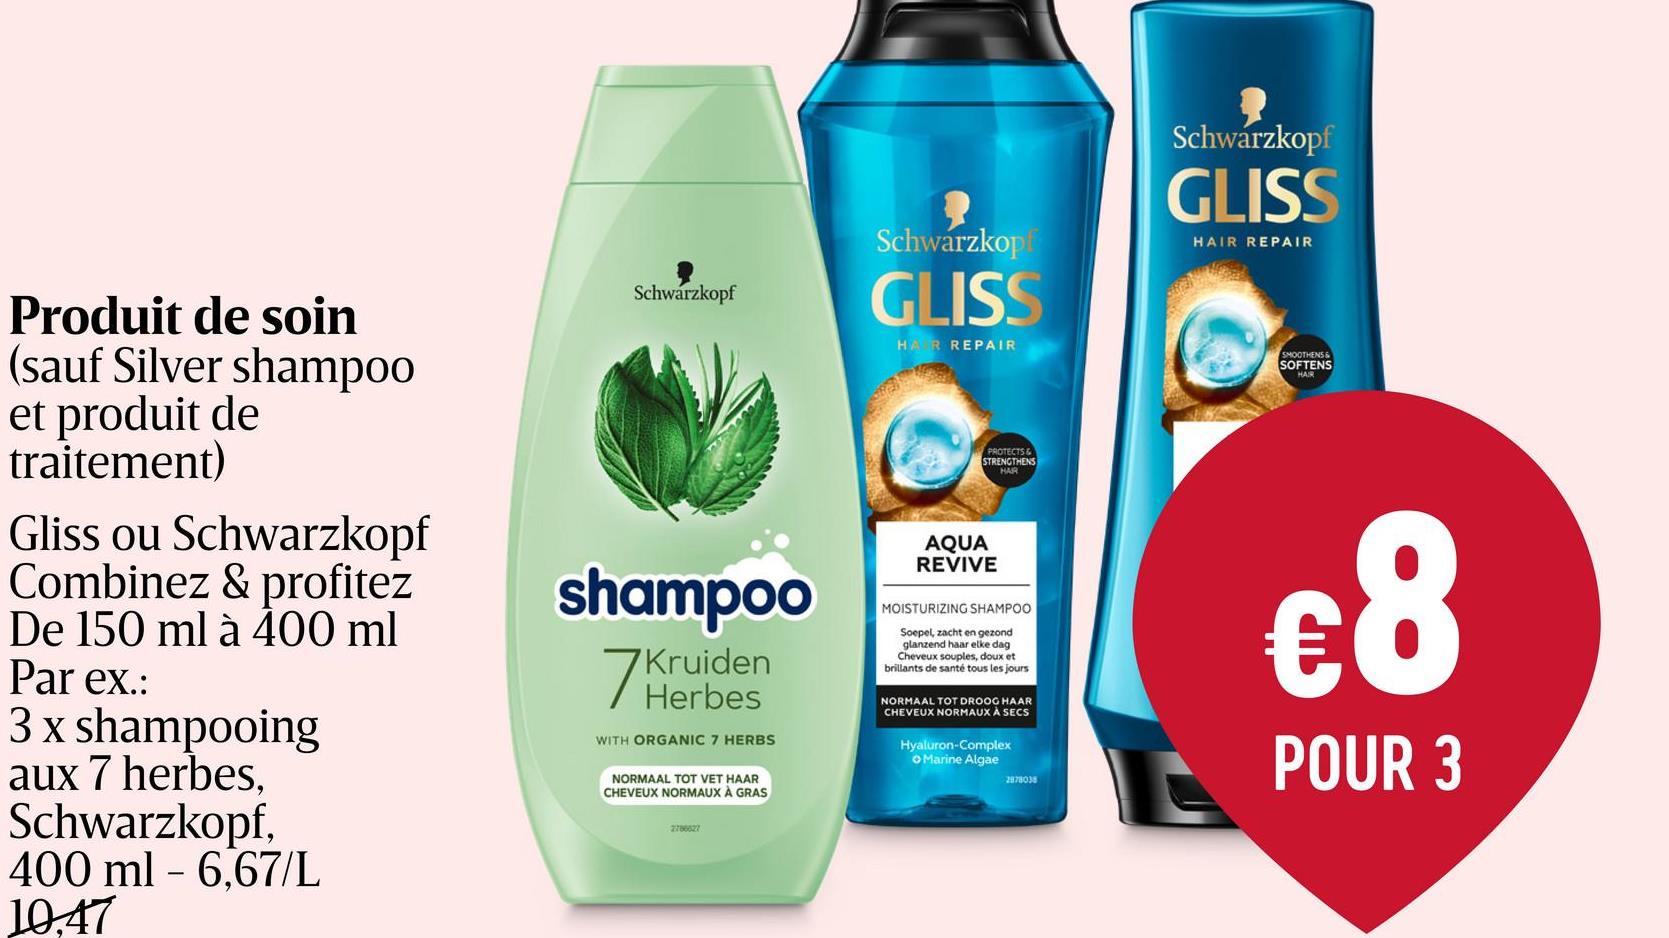 Shampoing | Herbes & Vigueur | 400ml conçu pour les cheveux fins et fragiles. Schwarzkopf shampoo Herbes & Vigueur contient du romarin bio et est